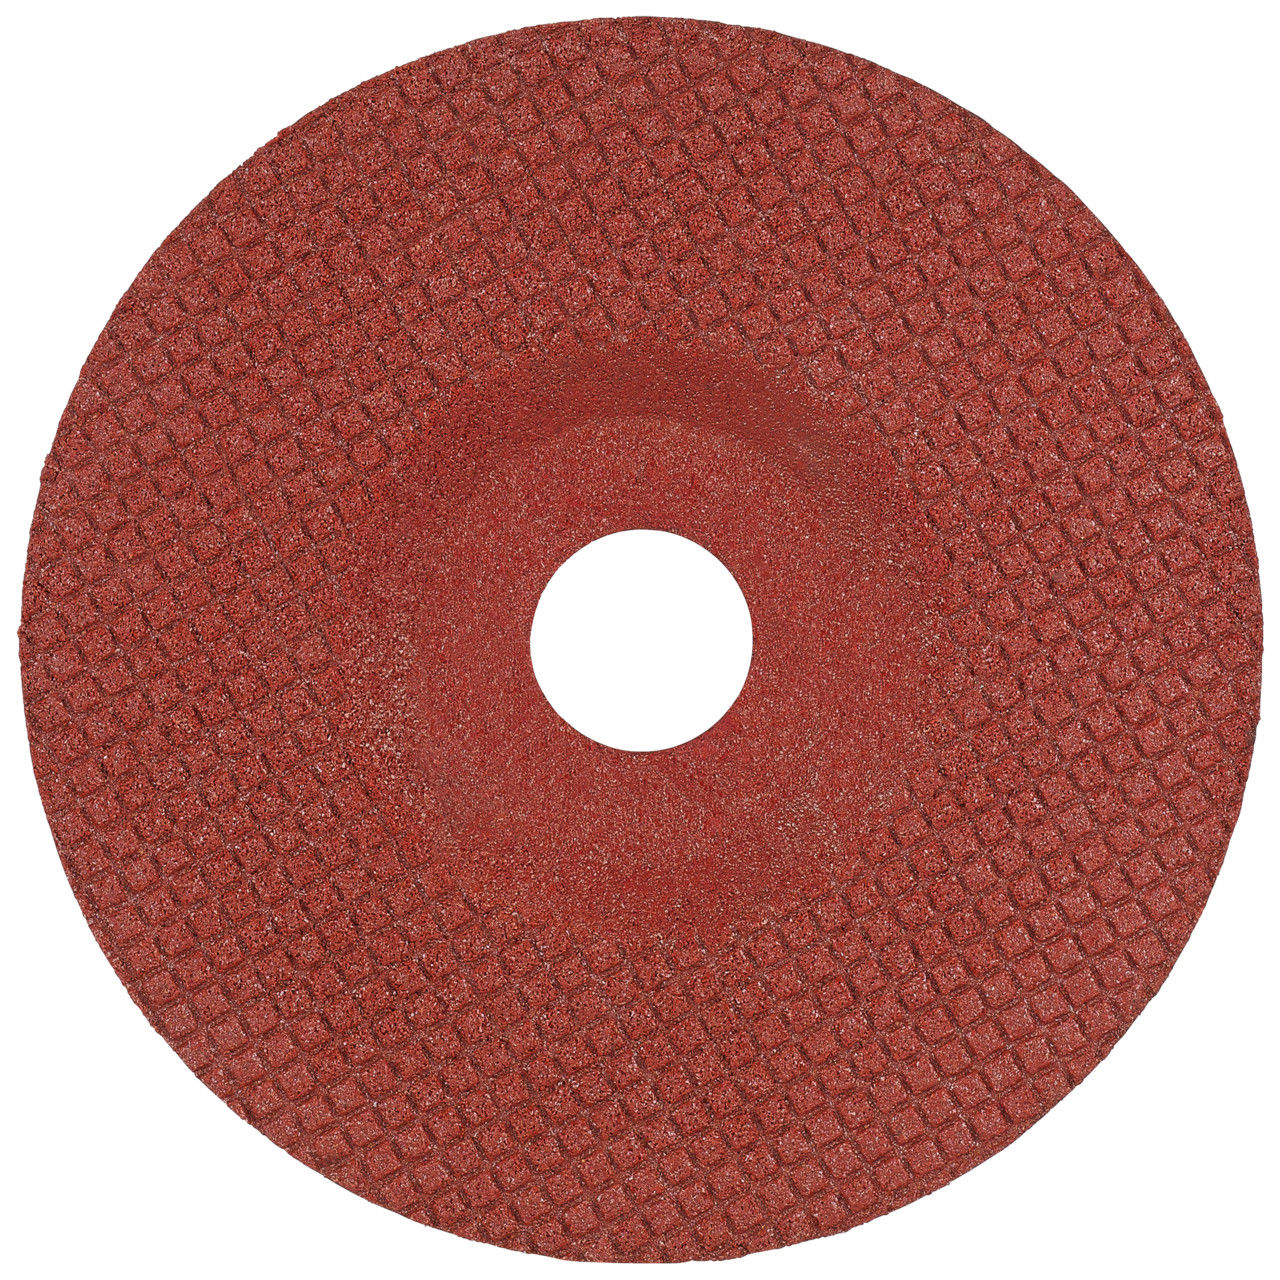 TYROLIT Disque abrasif DxH 178x22,23 TOUCH pour acier inoxydable et métaux non ferreux, forme : 29T - version déportée, Art. 236320